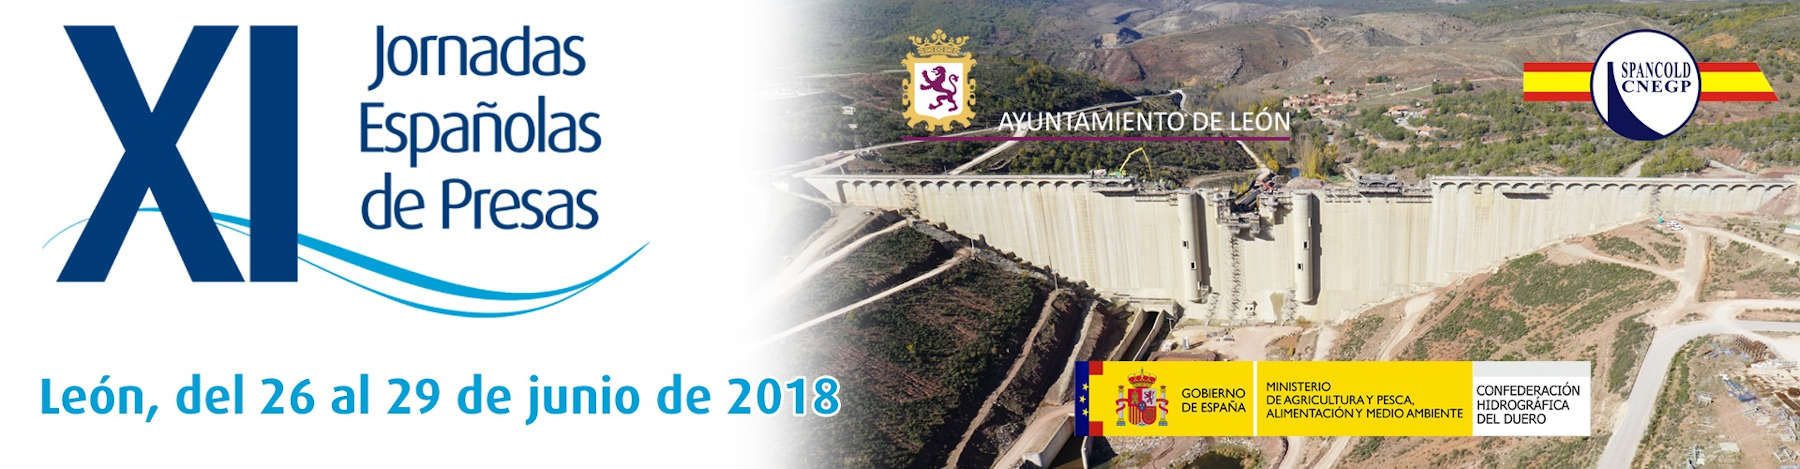 HCC participa en las XI Jornadas Españolas de Presas -León 2018-